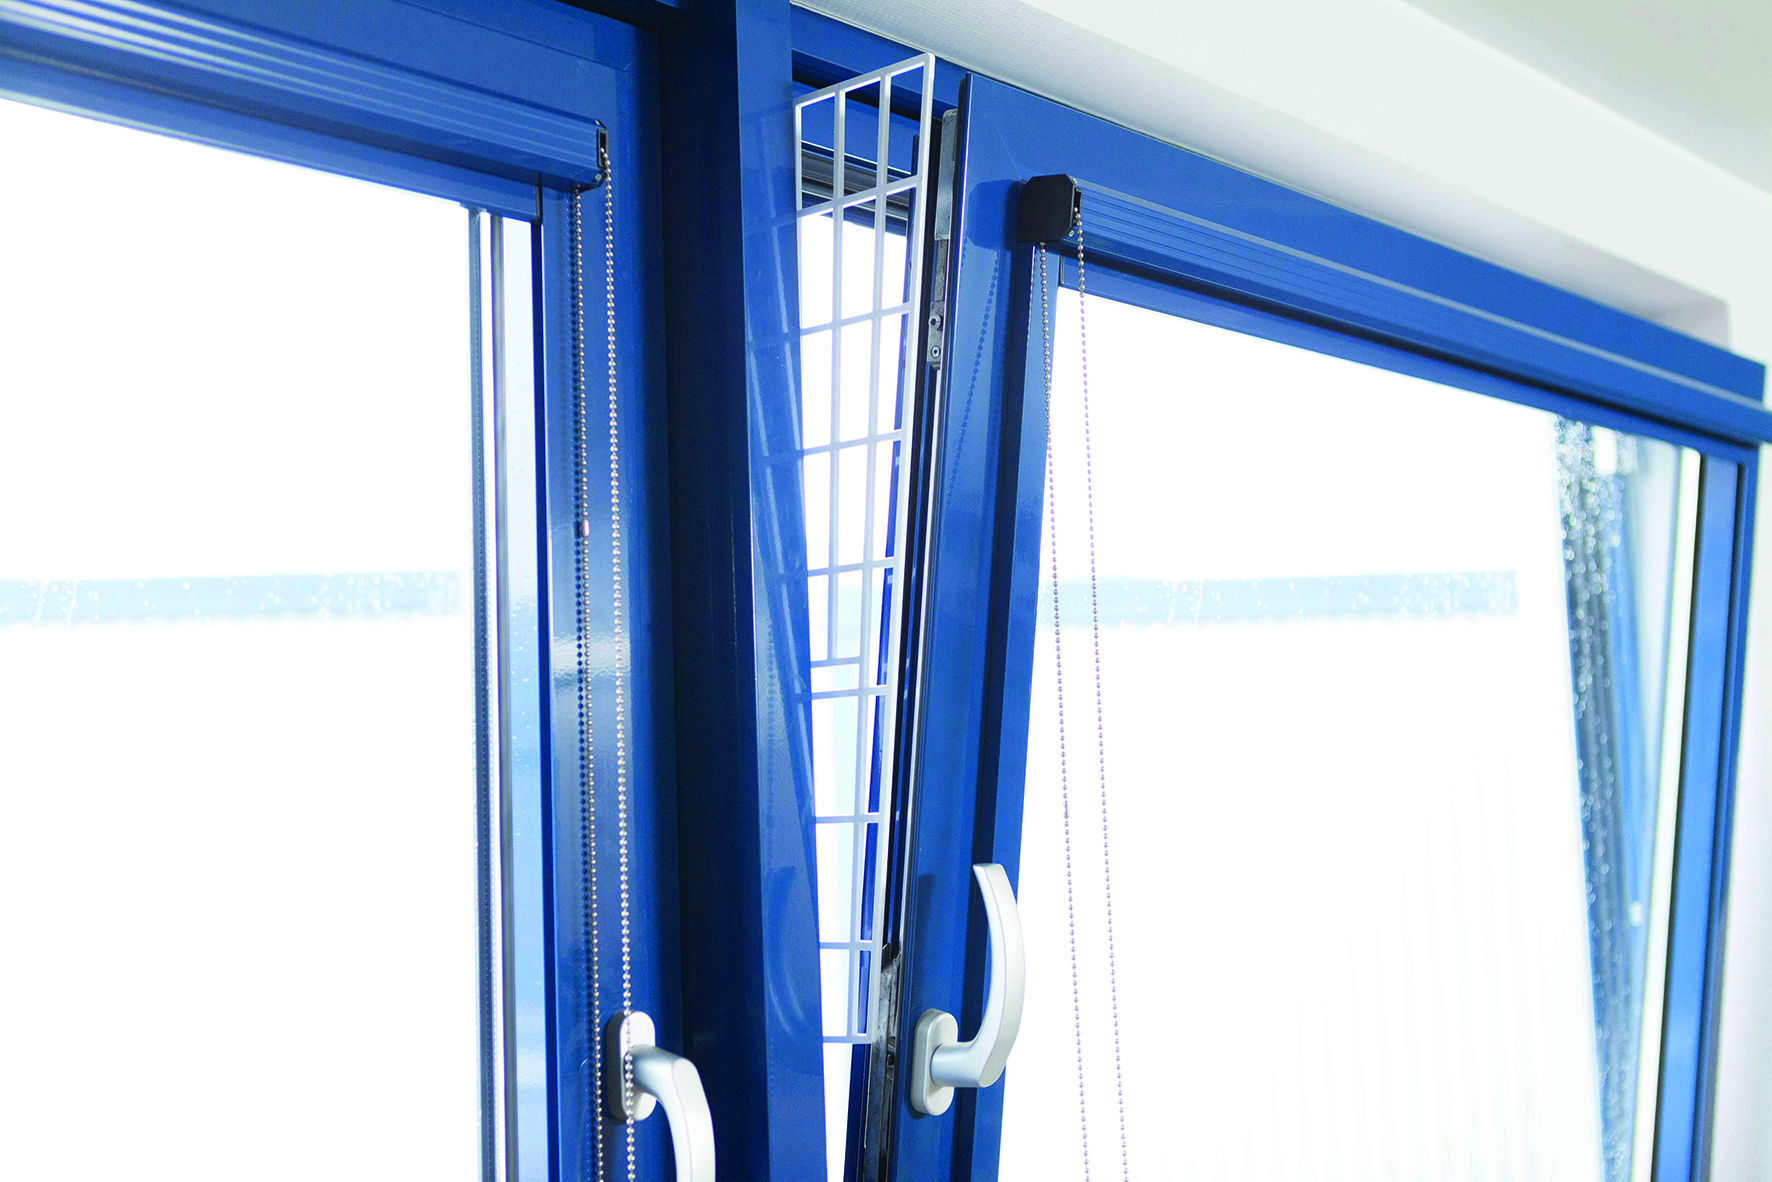 Trixie Schutzgitter für Fenster, Seitenteil, 62 x 16/7 cm, weiß